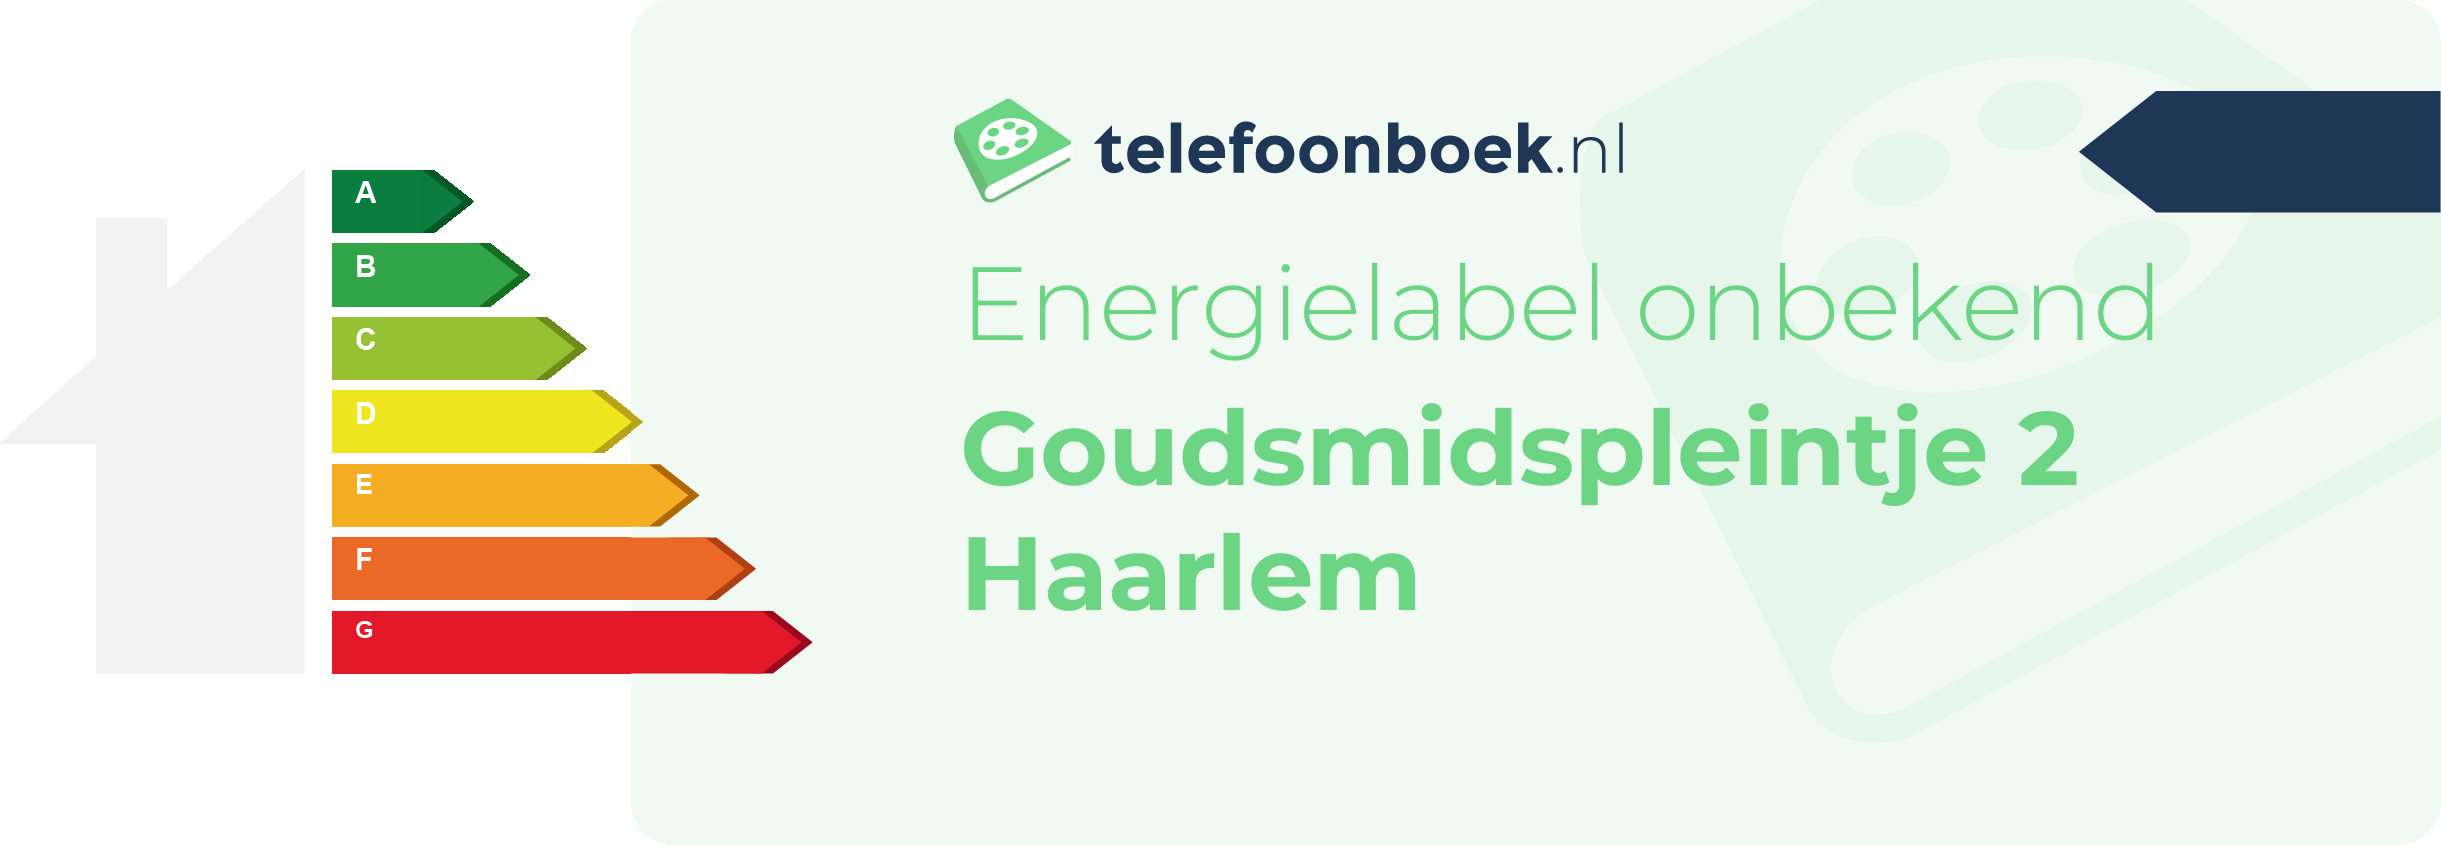 Energielabel Goudsmidspleintje 2 Haarlem